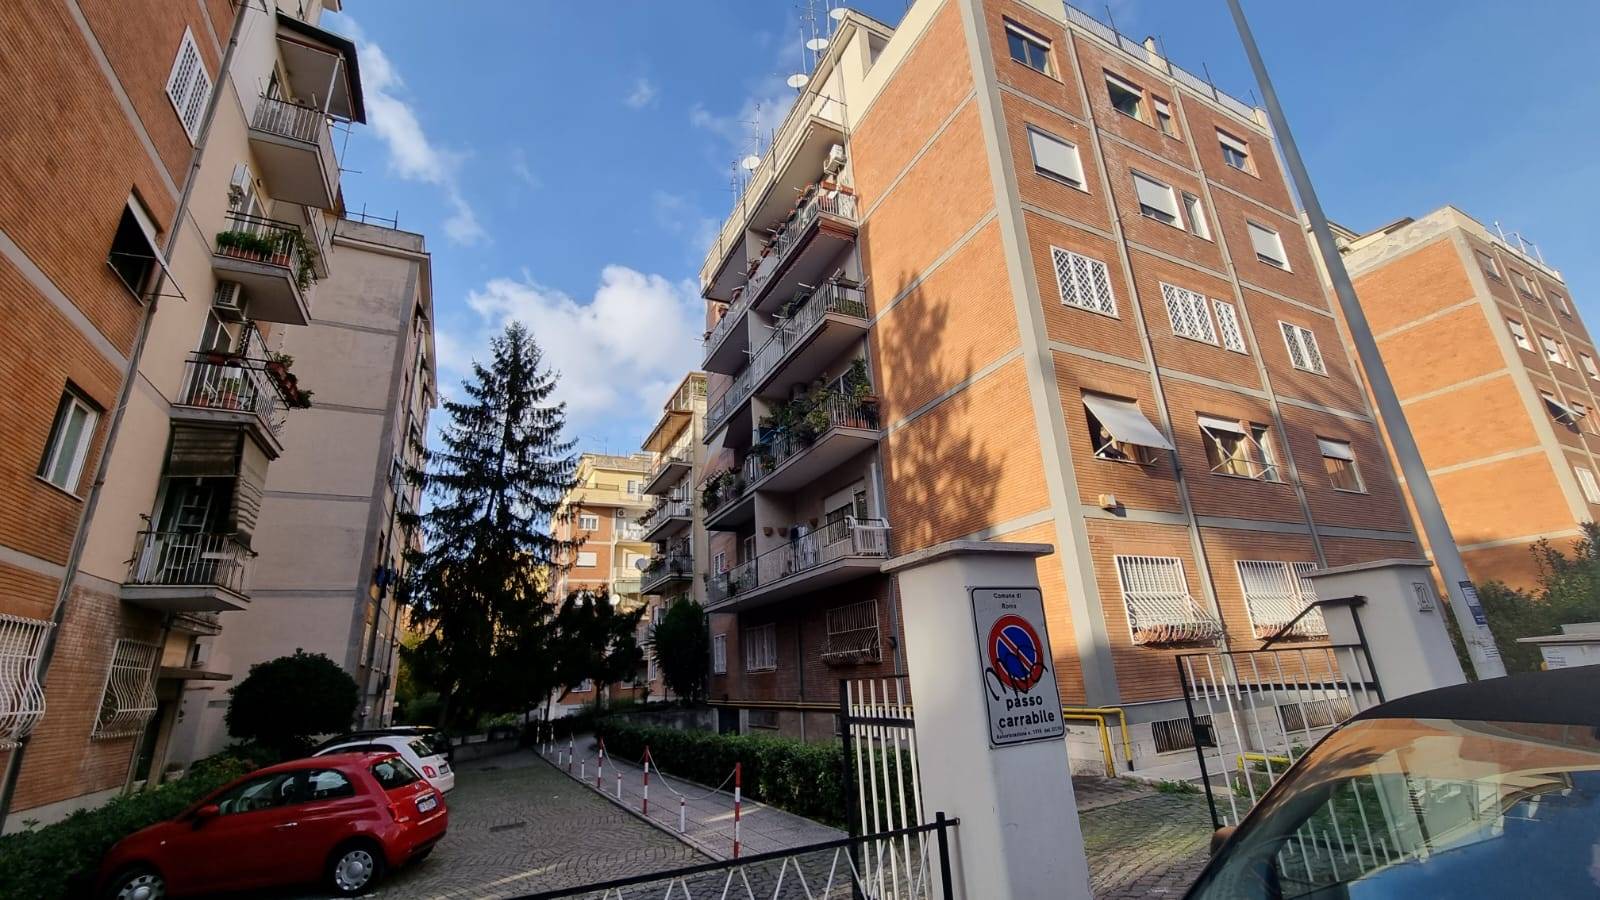 Talenti Via Ada Negri proponiamo in affitto appartamento mq. 90 composto da salone a vista, cucina abitabile, due camere matrimoniali, un bagno e 